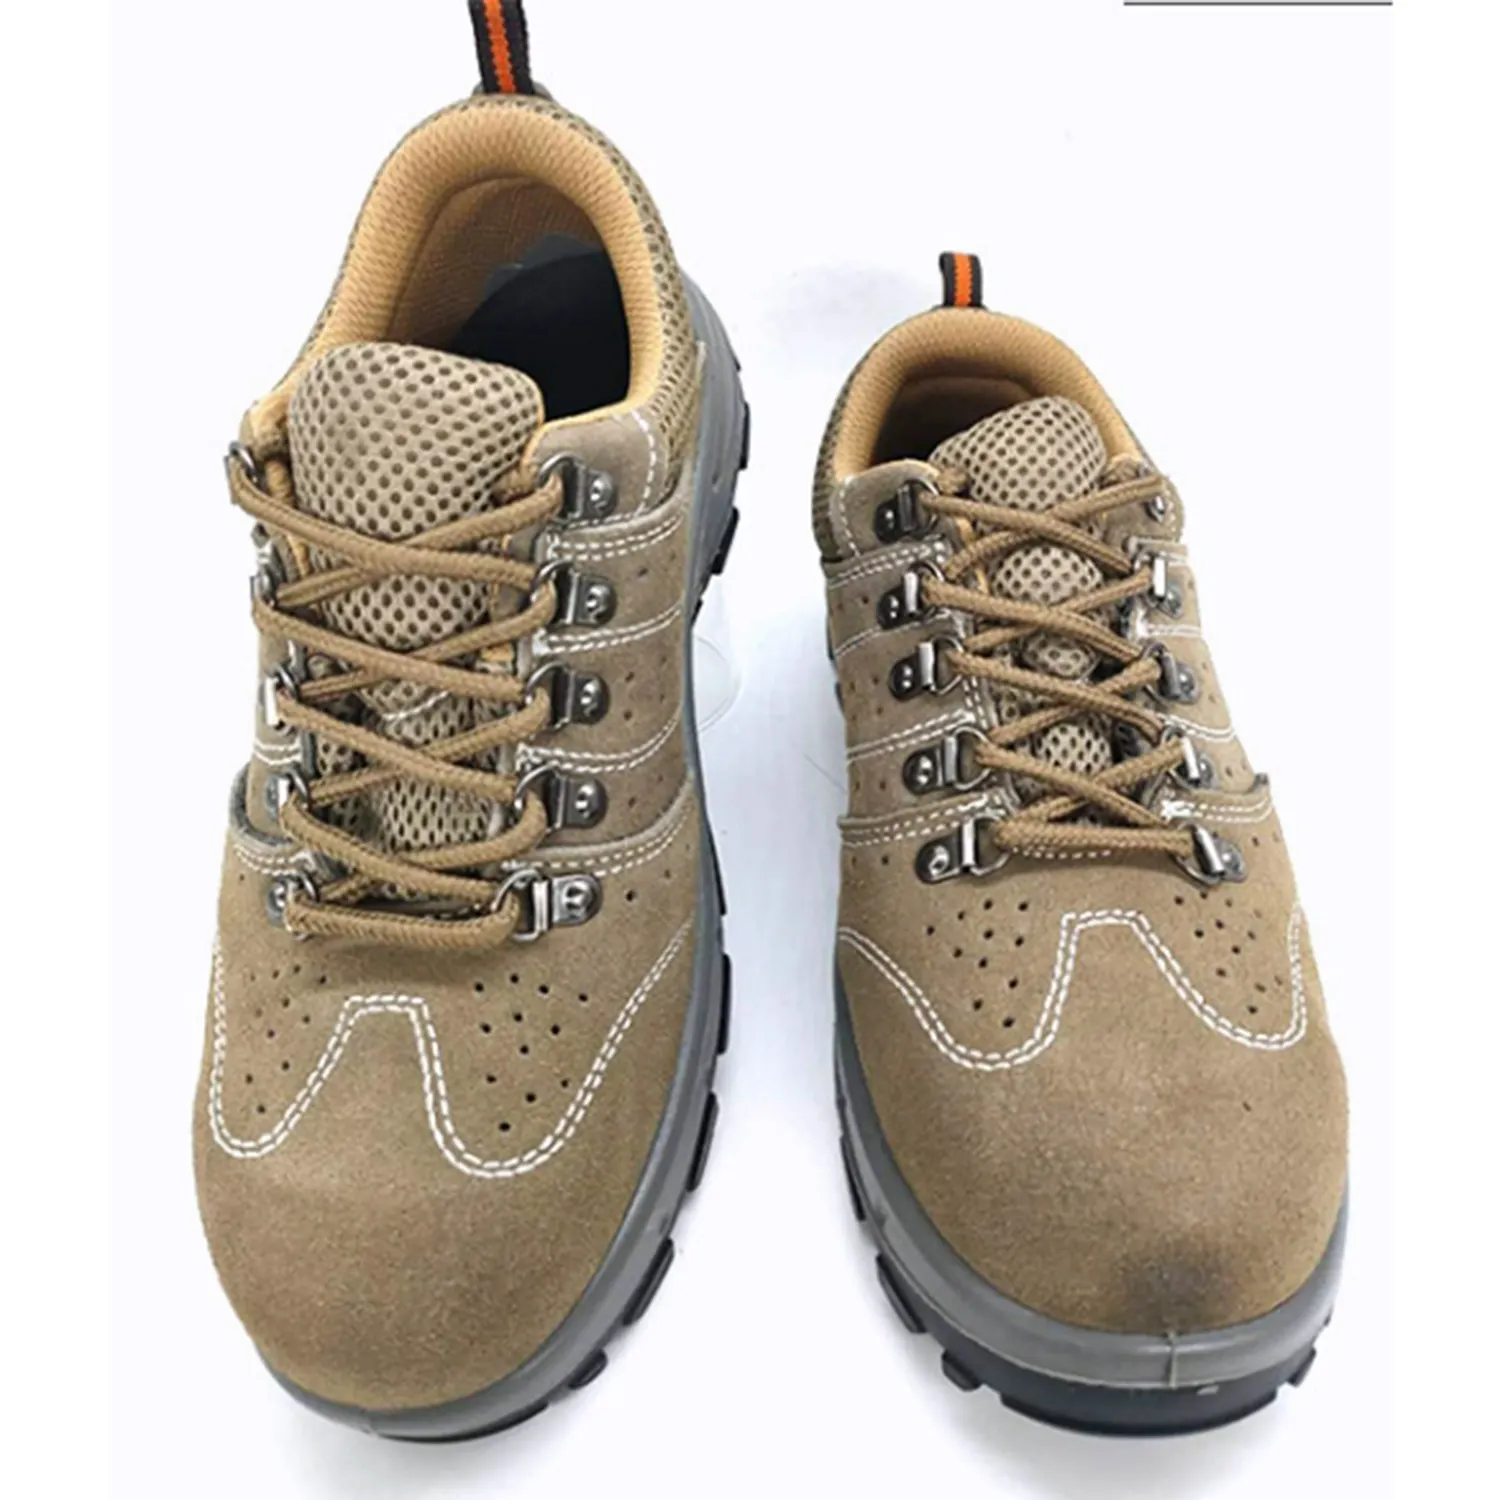 Botas de segurança para homens com biqueira de aço, calçado de segurança unissex personalizado para uso doméstico, com biqueira de dedo do pé, para trabalho de construção